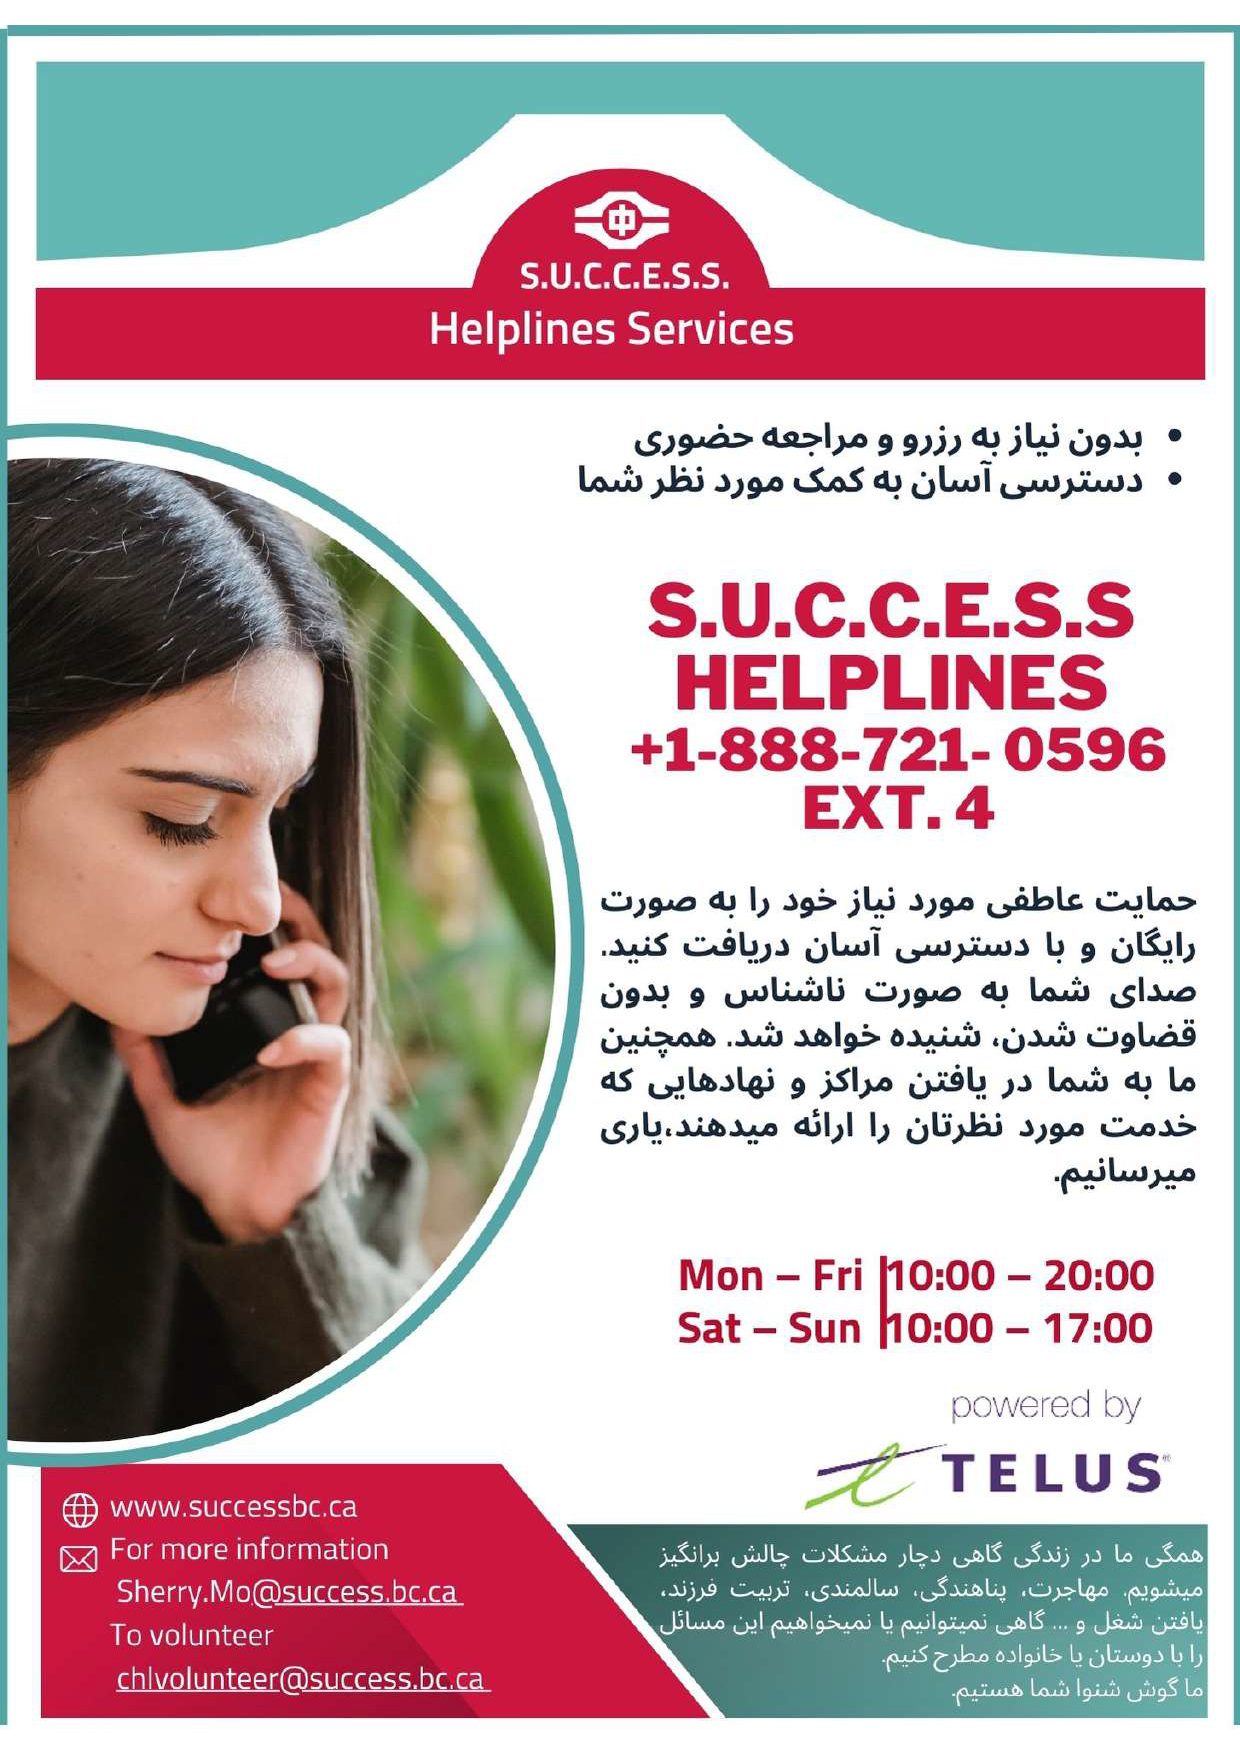 Helpline Services  S.U.C.C.E.S.S.  5 languages_Page_4.png